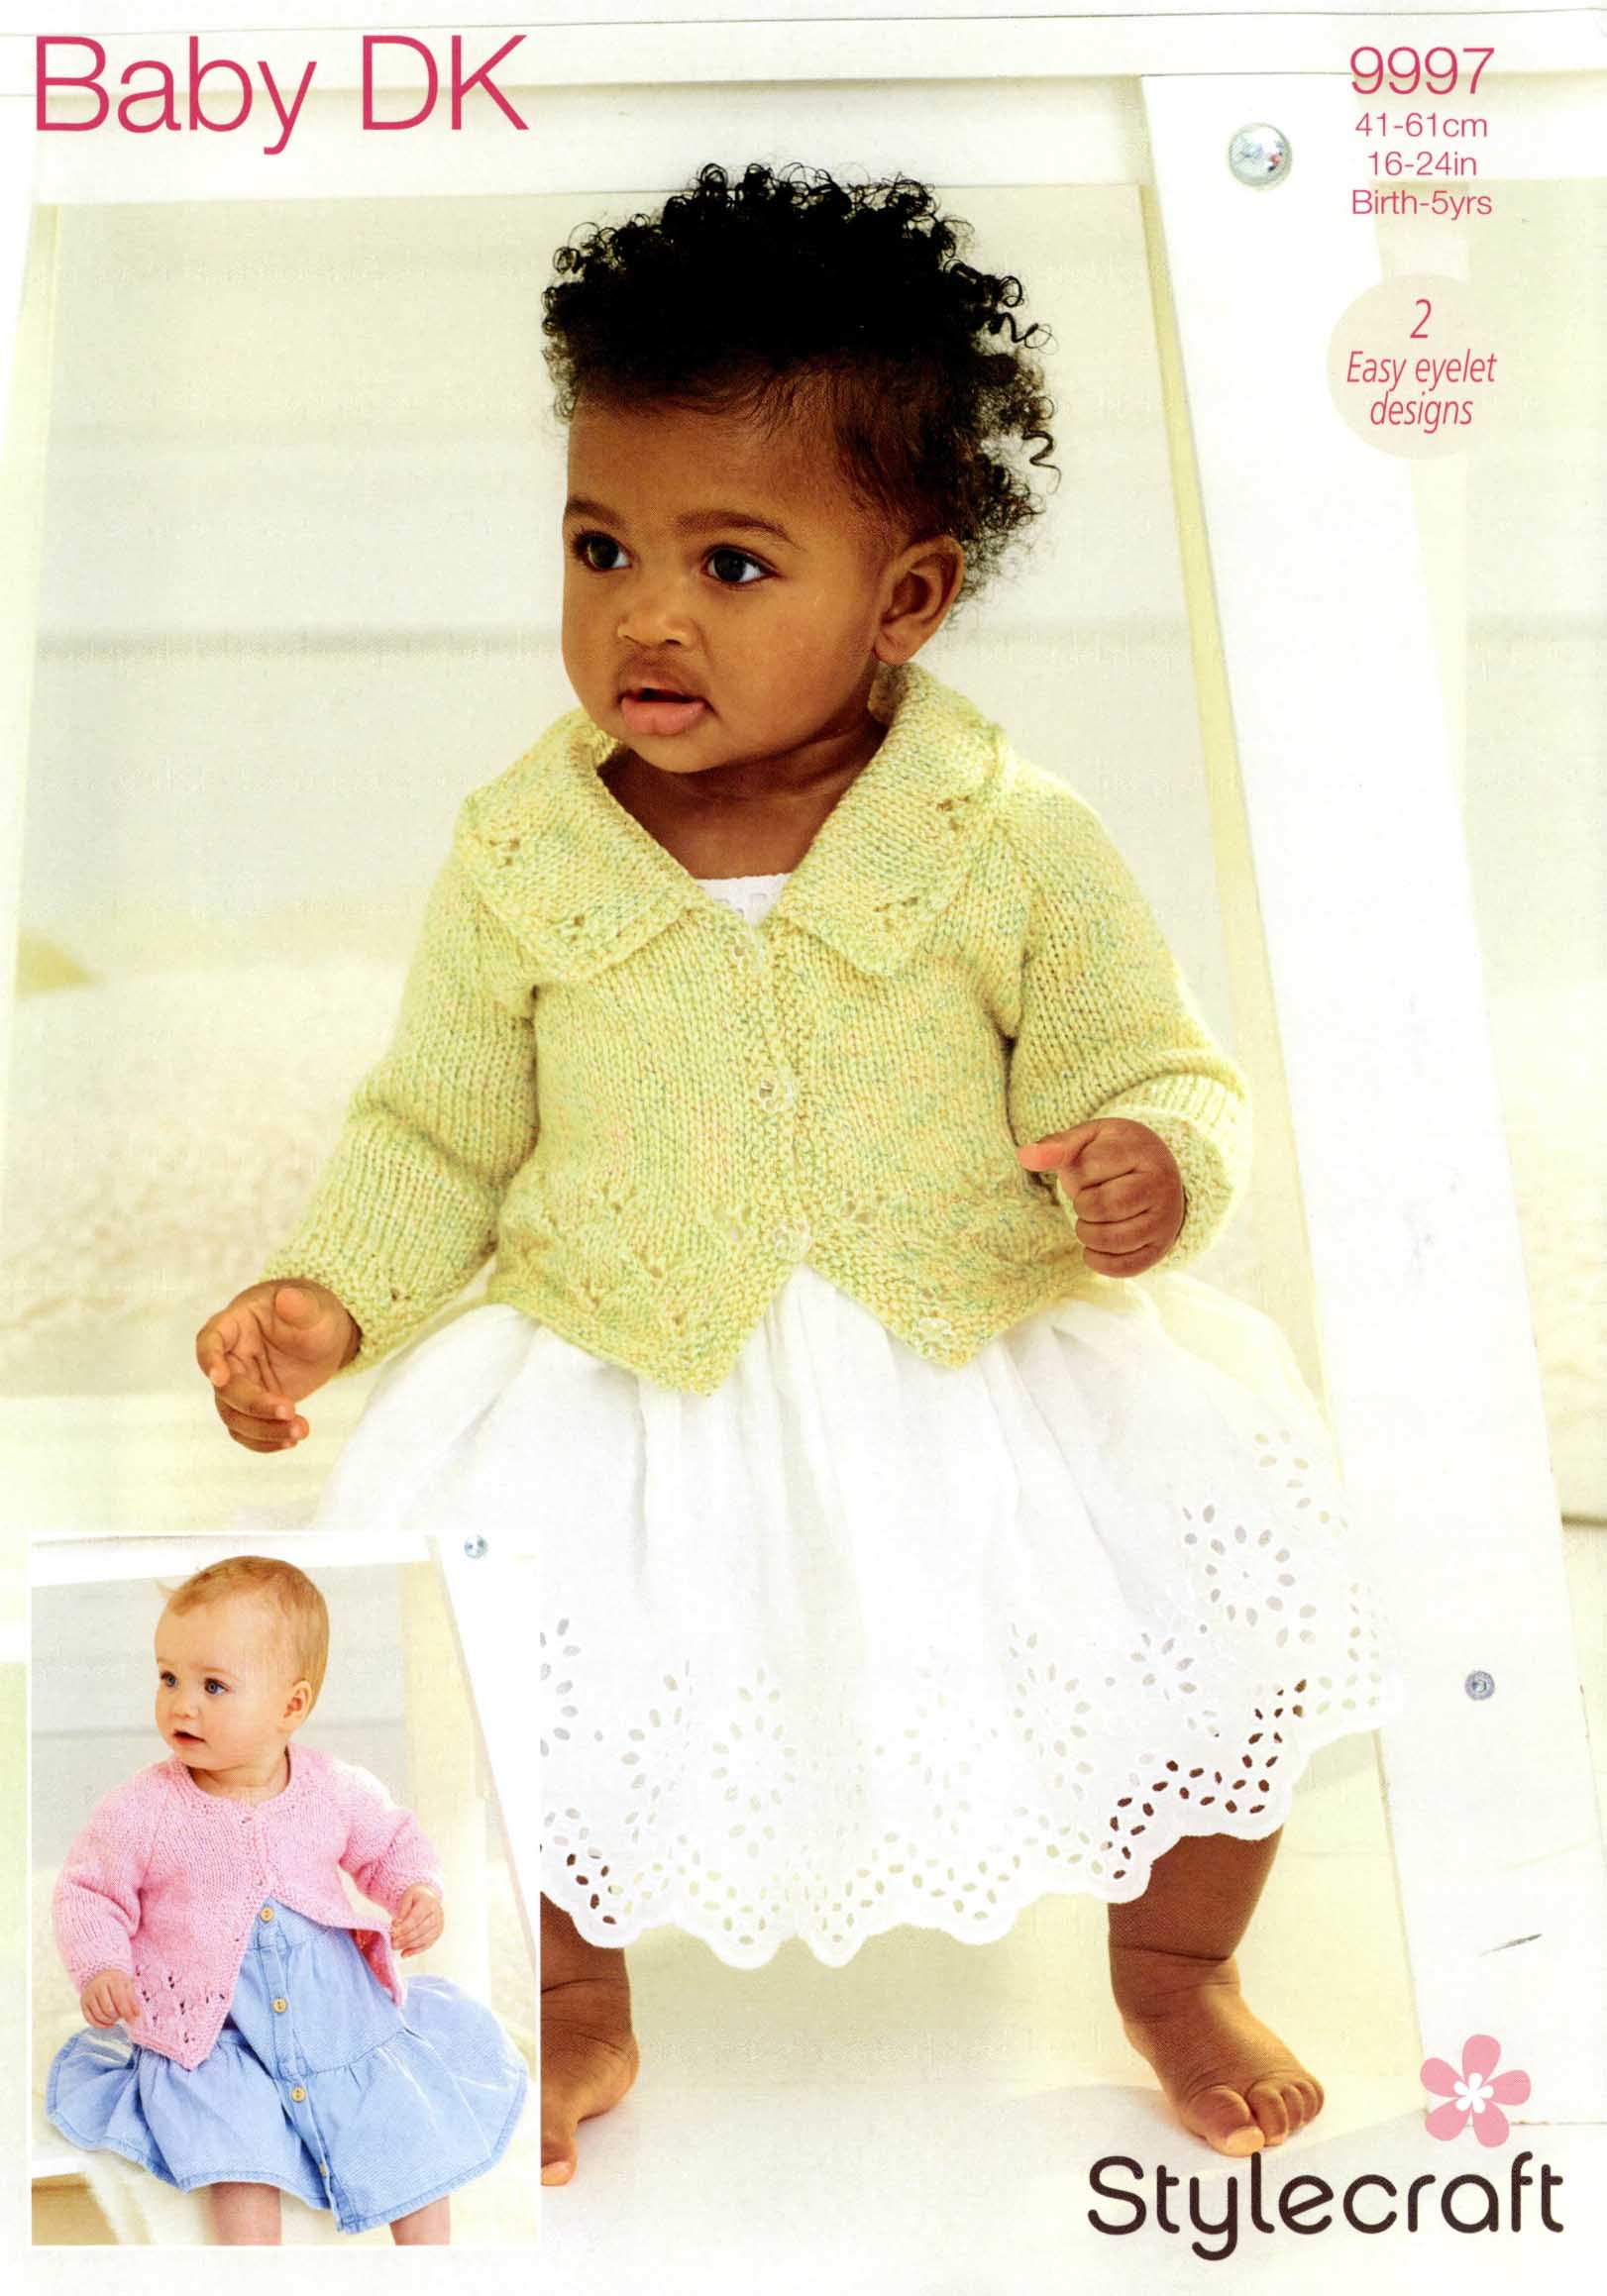 Stylecraft Baby Sparkle DK - Cardigans (9997)